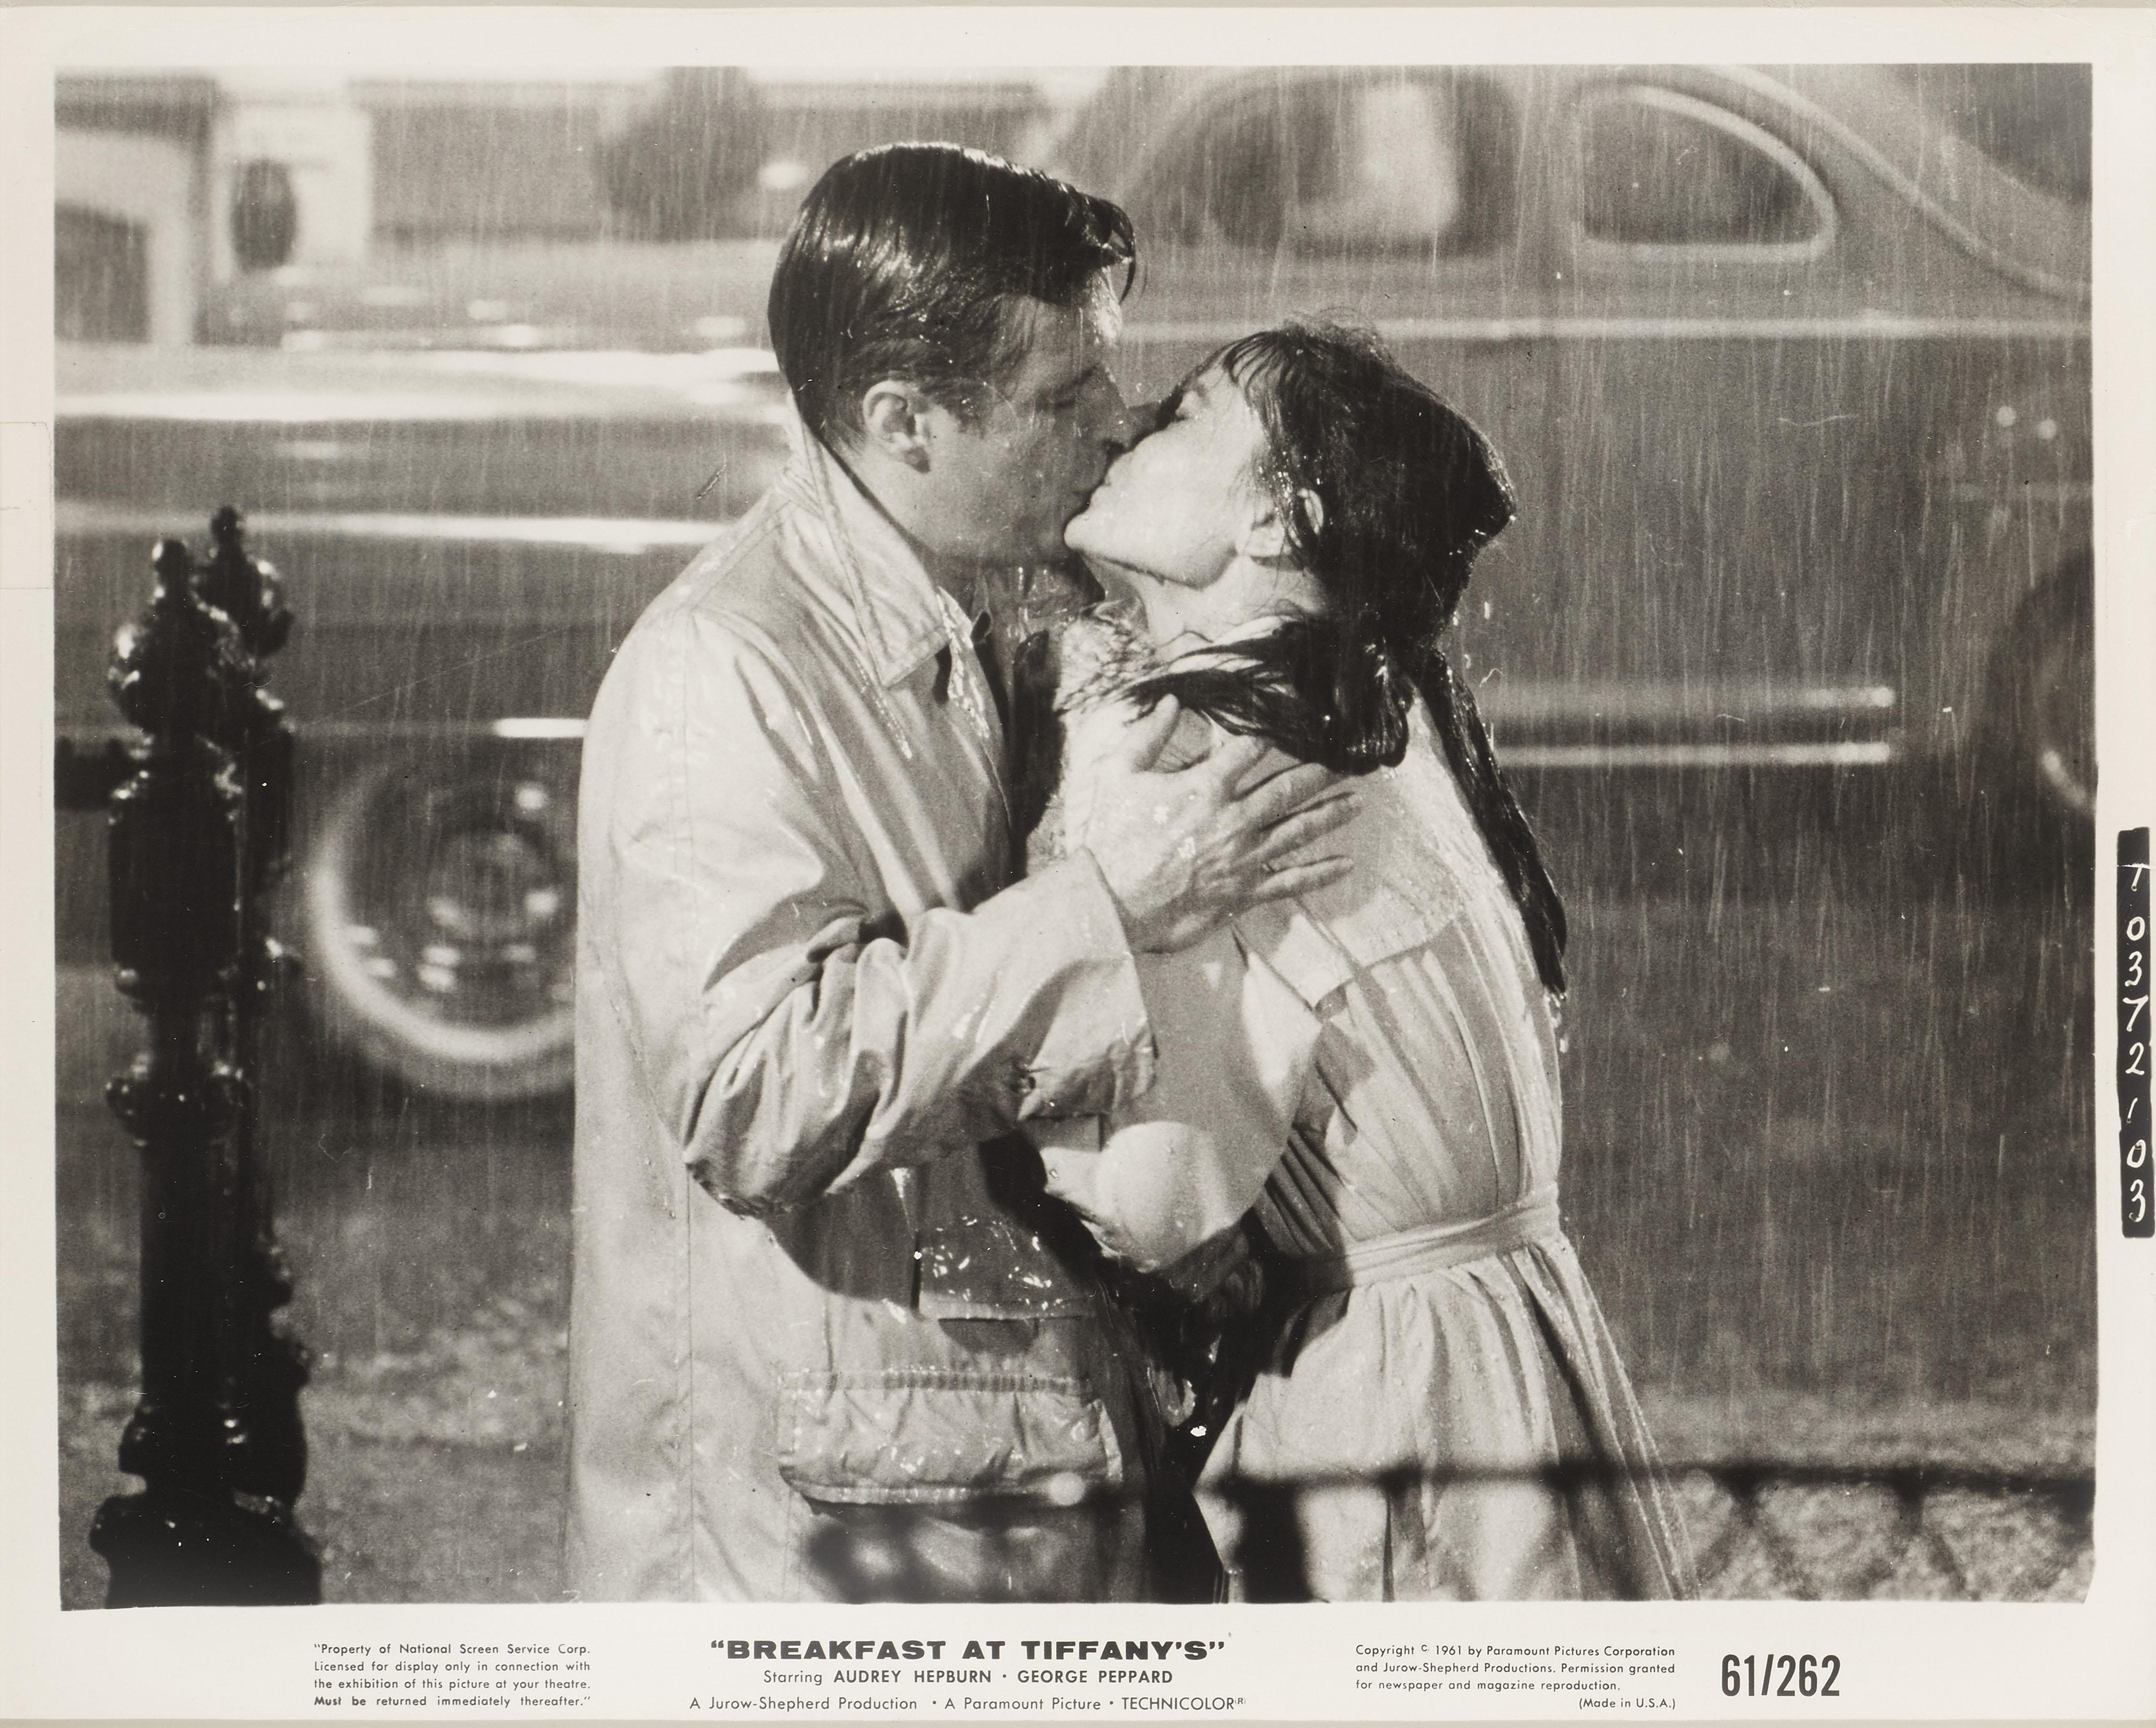 Original-Schwarzweiß-Fotostandbild für die legendäre Audrey Hepburn-Komödie Romance von 1961. Der Film wurde von Blake Edwards inszeniert und zeigt Audrey Hepburn und George Peppard. Dies ist zweifelsohne Hepburns berühmteste und ikonischste Rolle.